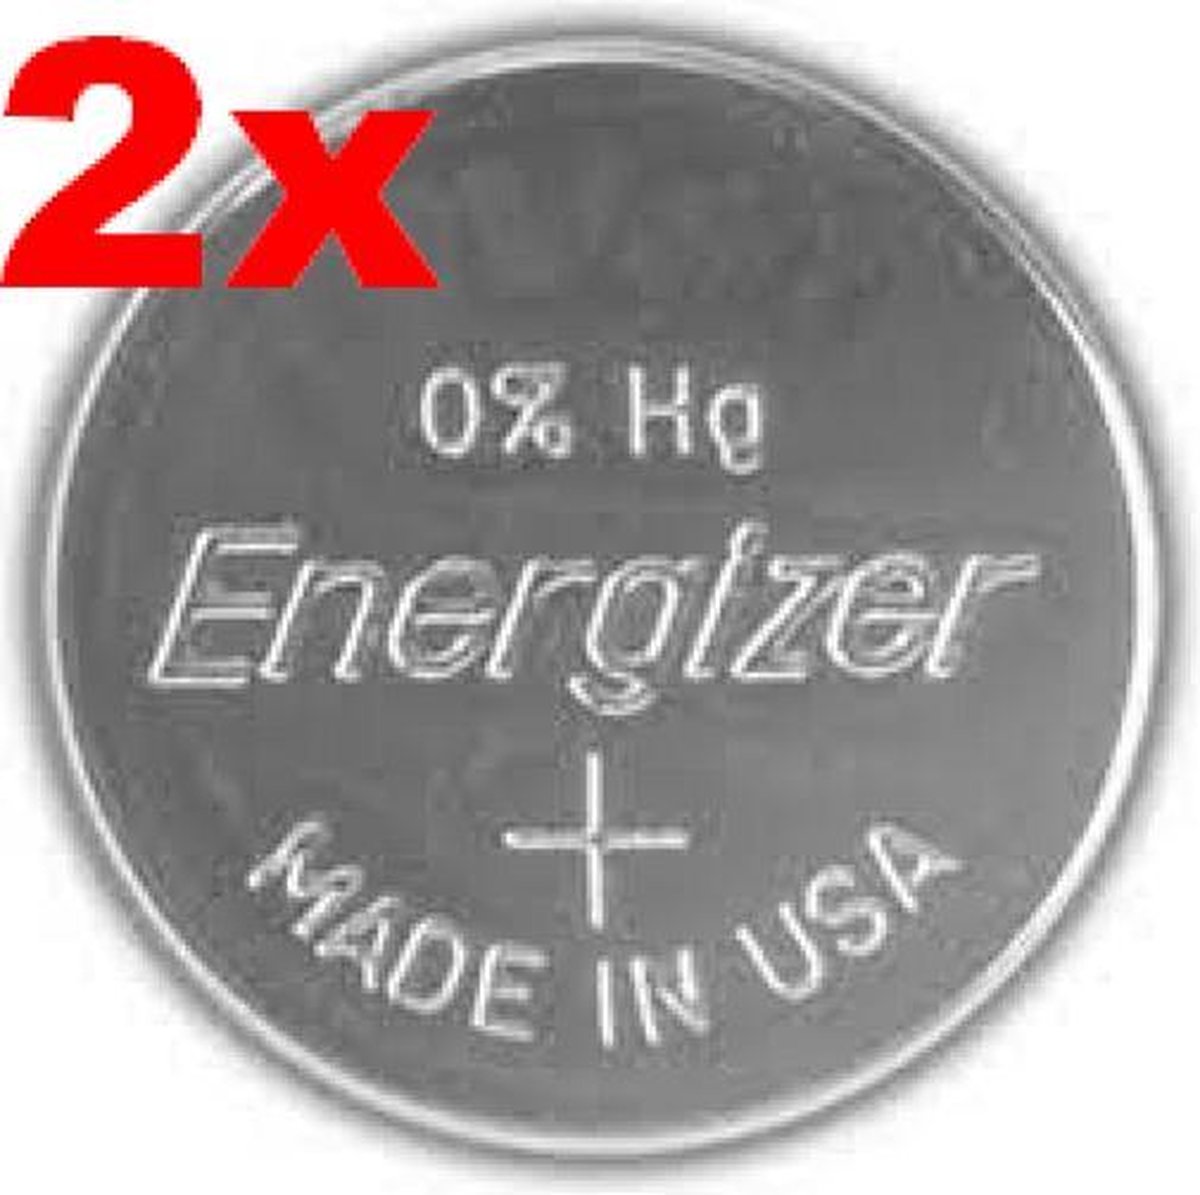 Energizer 392 / 384 SR736 zilveroxide knoopcel horlogebatterij 2 (twee) stuks